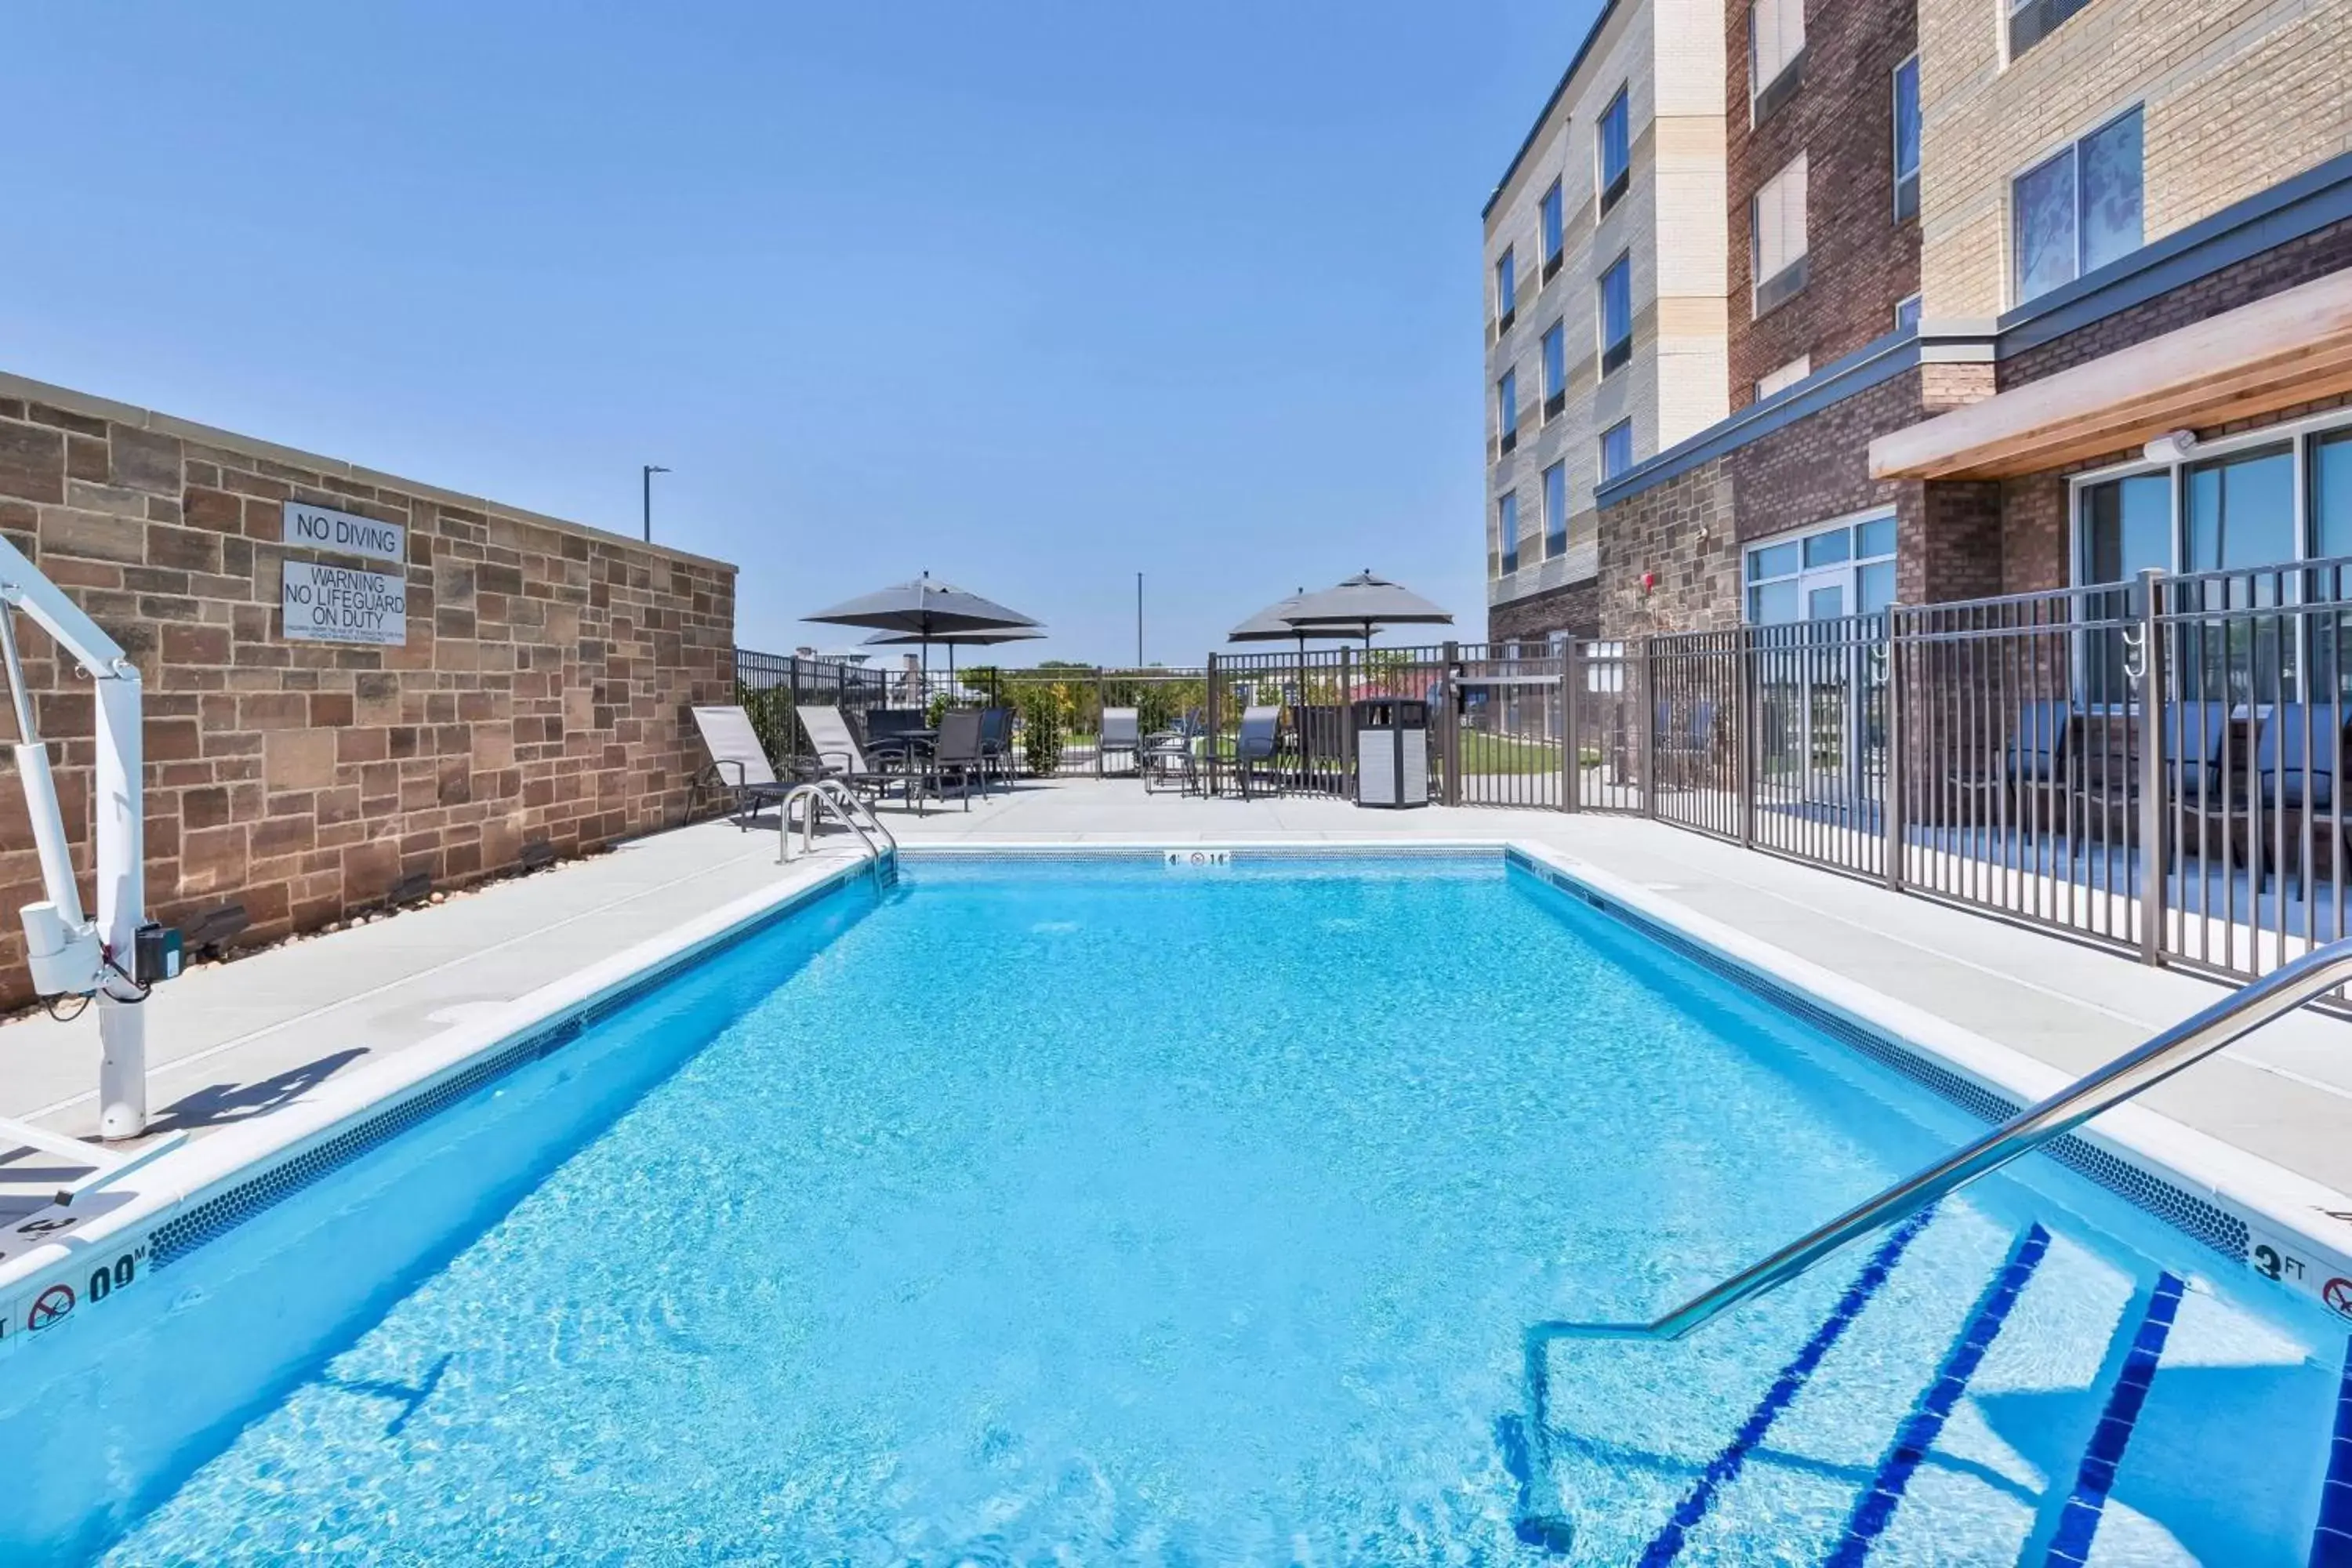 Swimming Pool in Fairfield Inn & Suites by Marriott Cincinnati Airport South/Florence